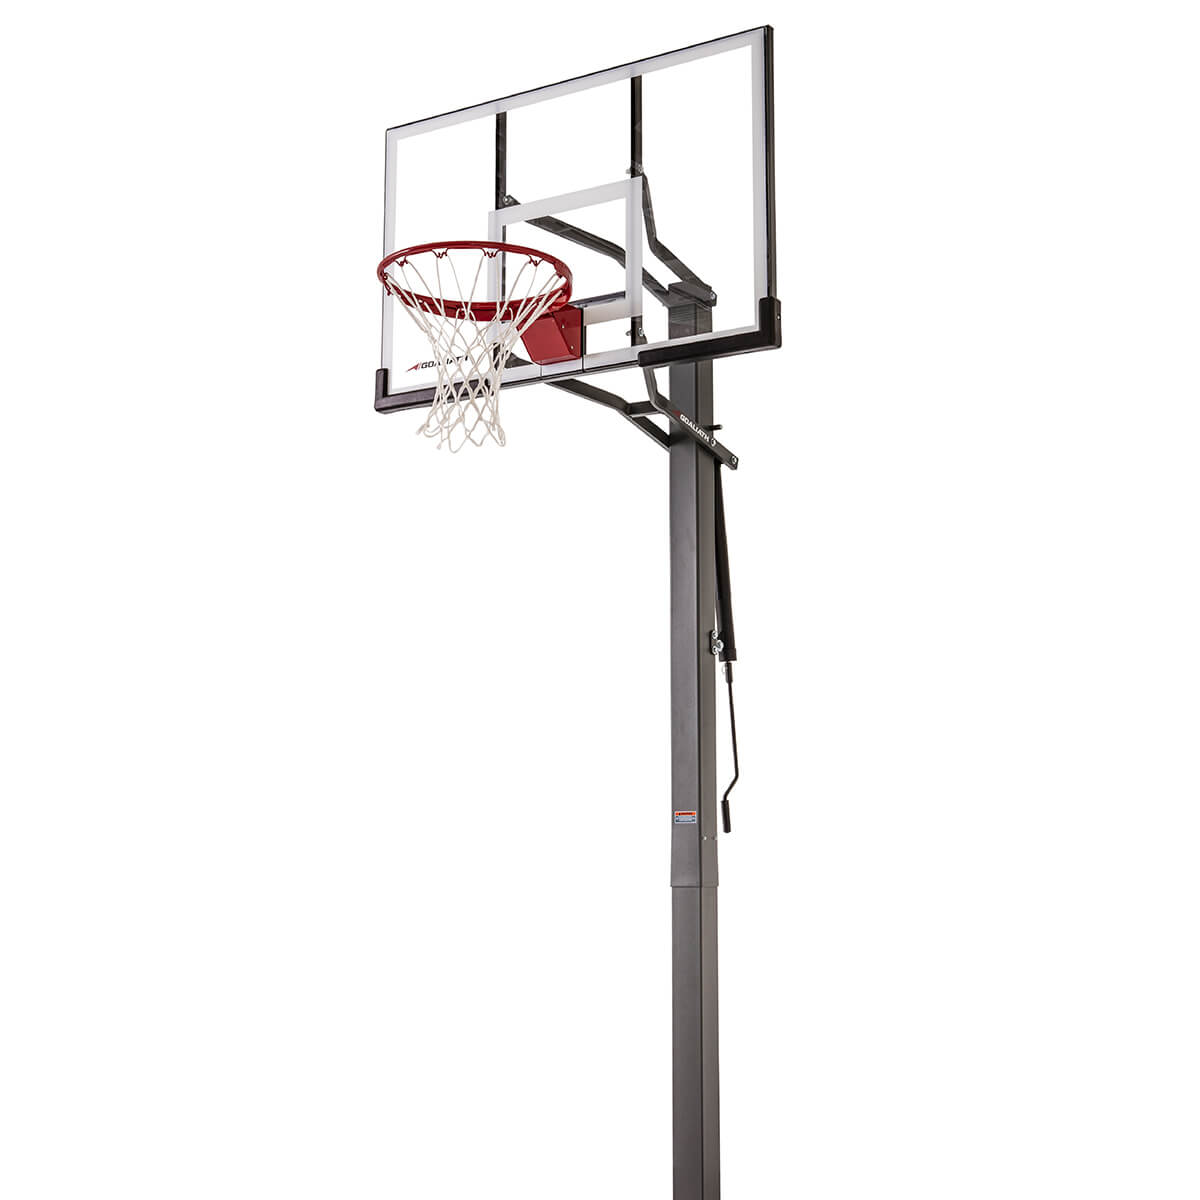 Goaliath GB50 kaufen InGround Basketballanlage online